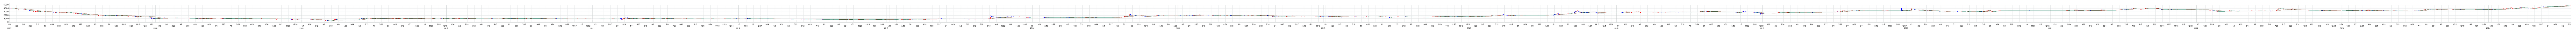 徳倉建設の株価チャート